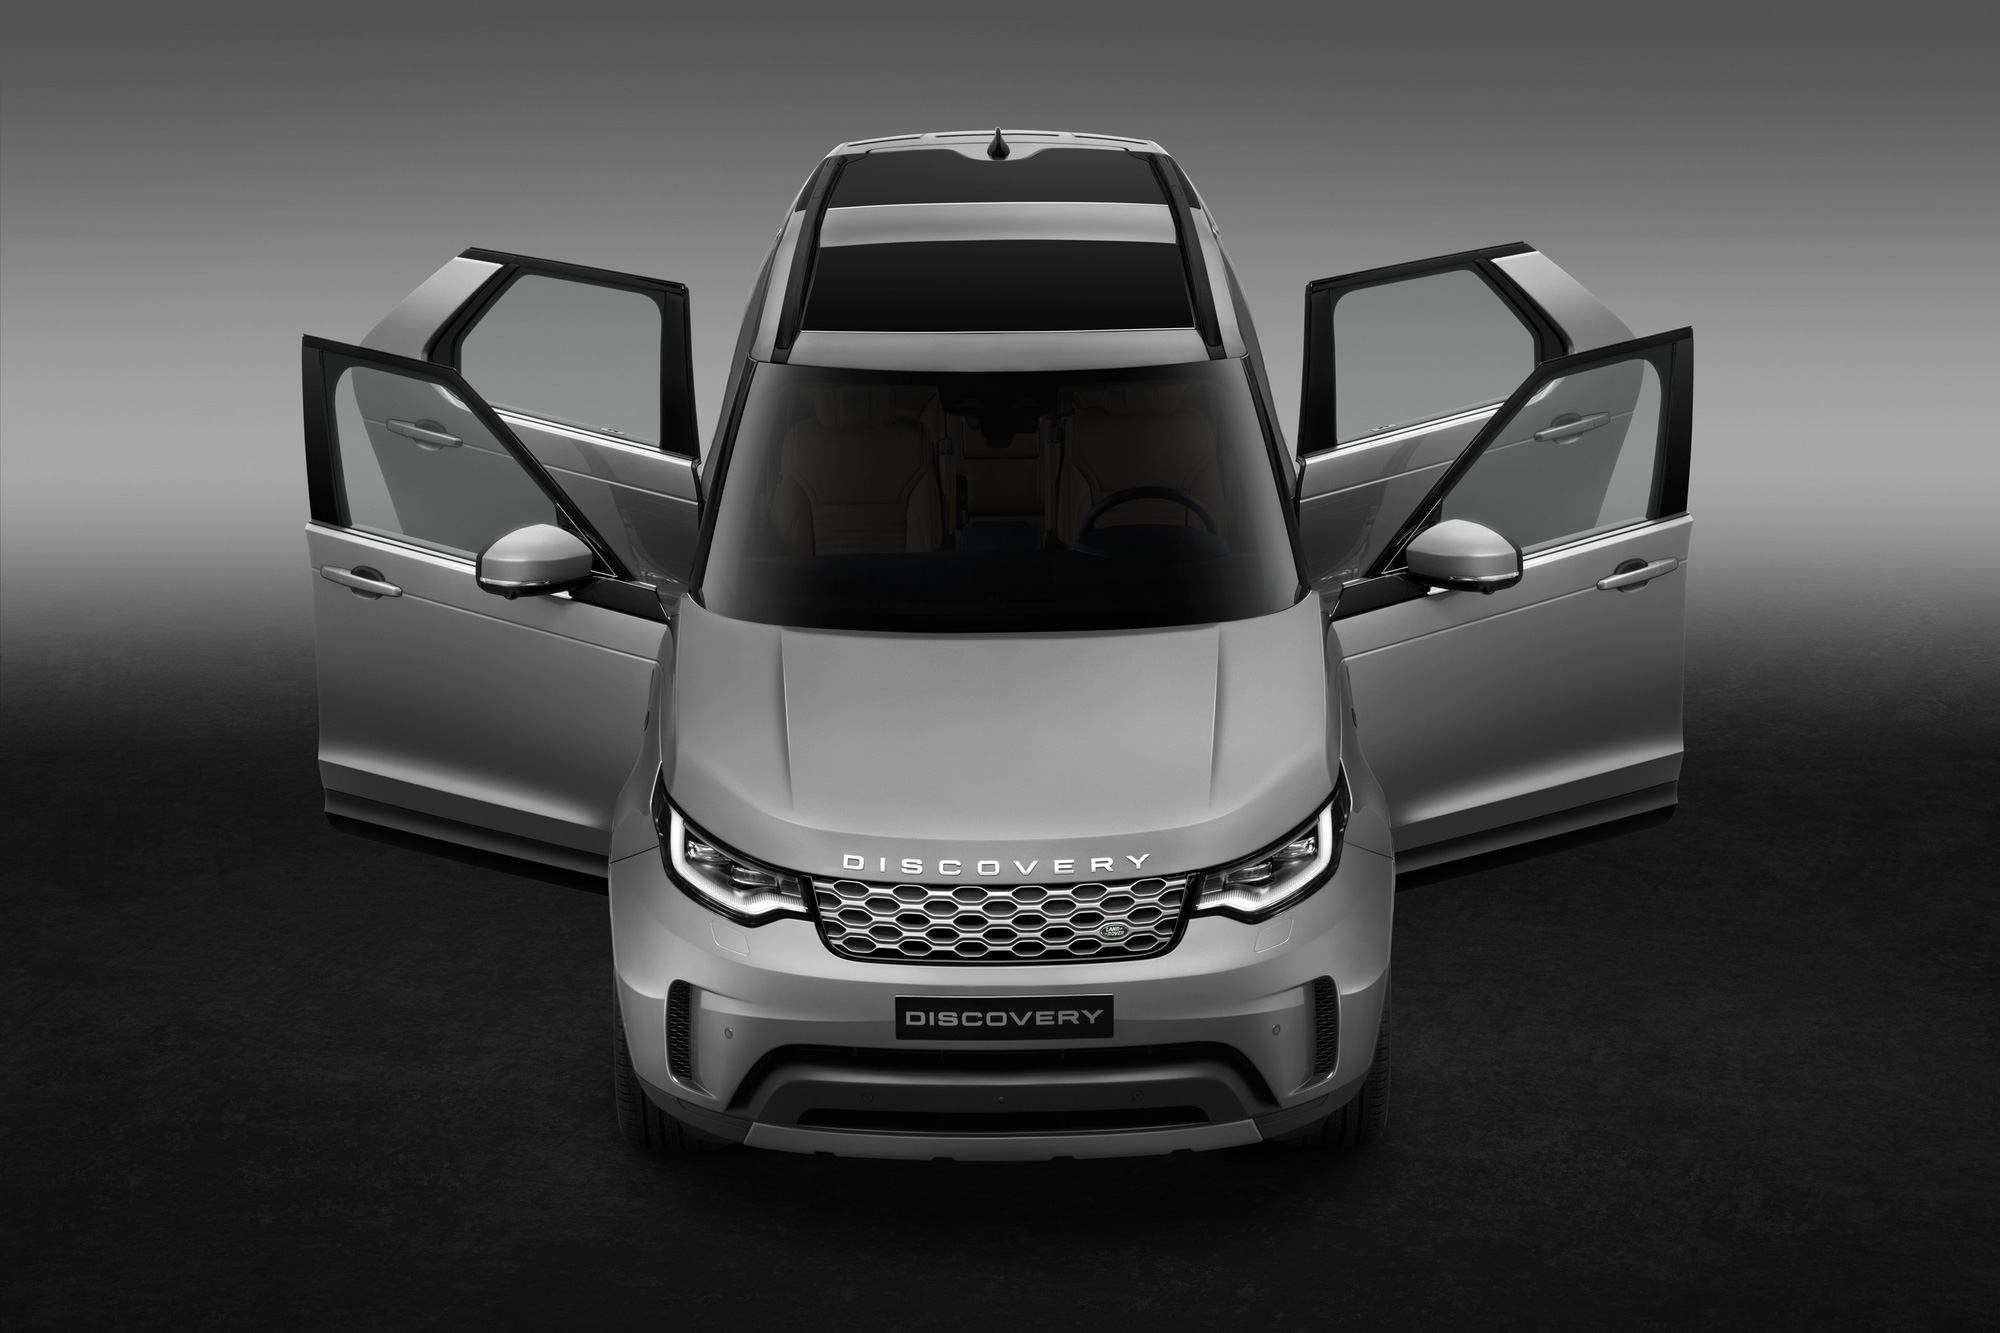 Ra mắt Land Rover Discovery 2021 tại Việt Nam: Giá từ 4,54 tỷ đồng, đối thủ ngang giá của Mercedes GLS và BMW X5 - Ảnh 1.